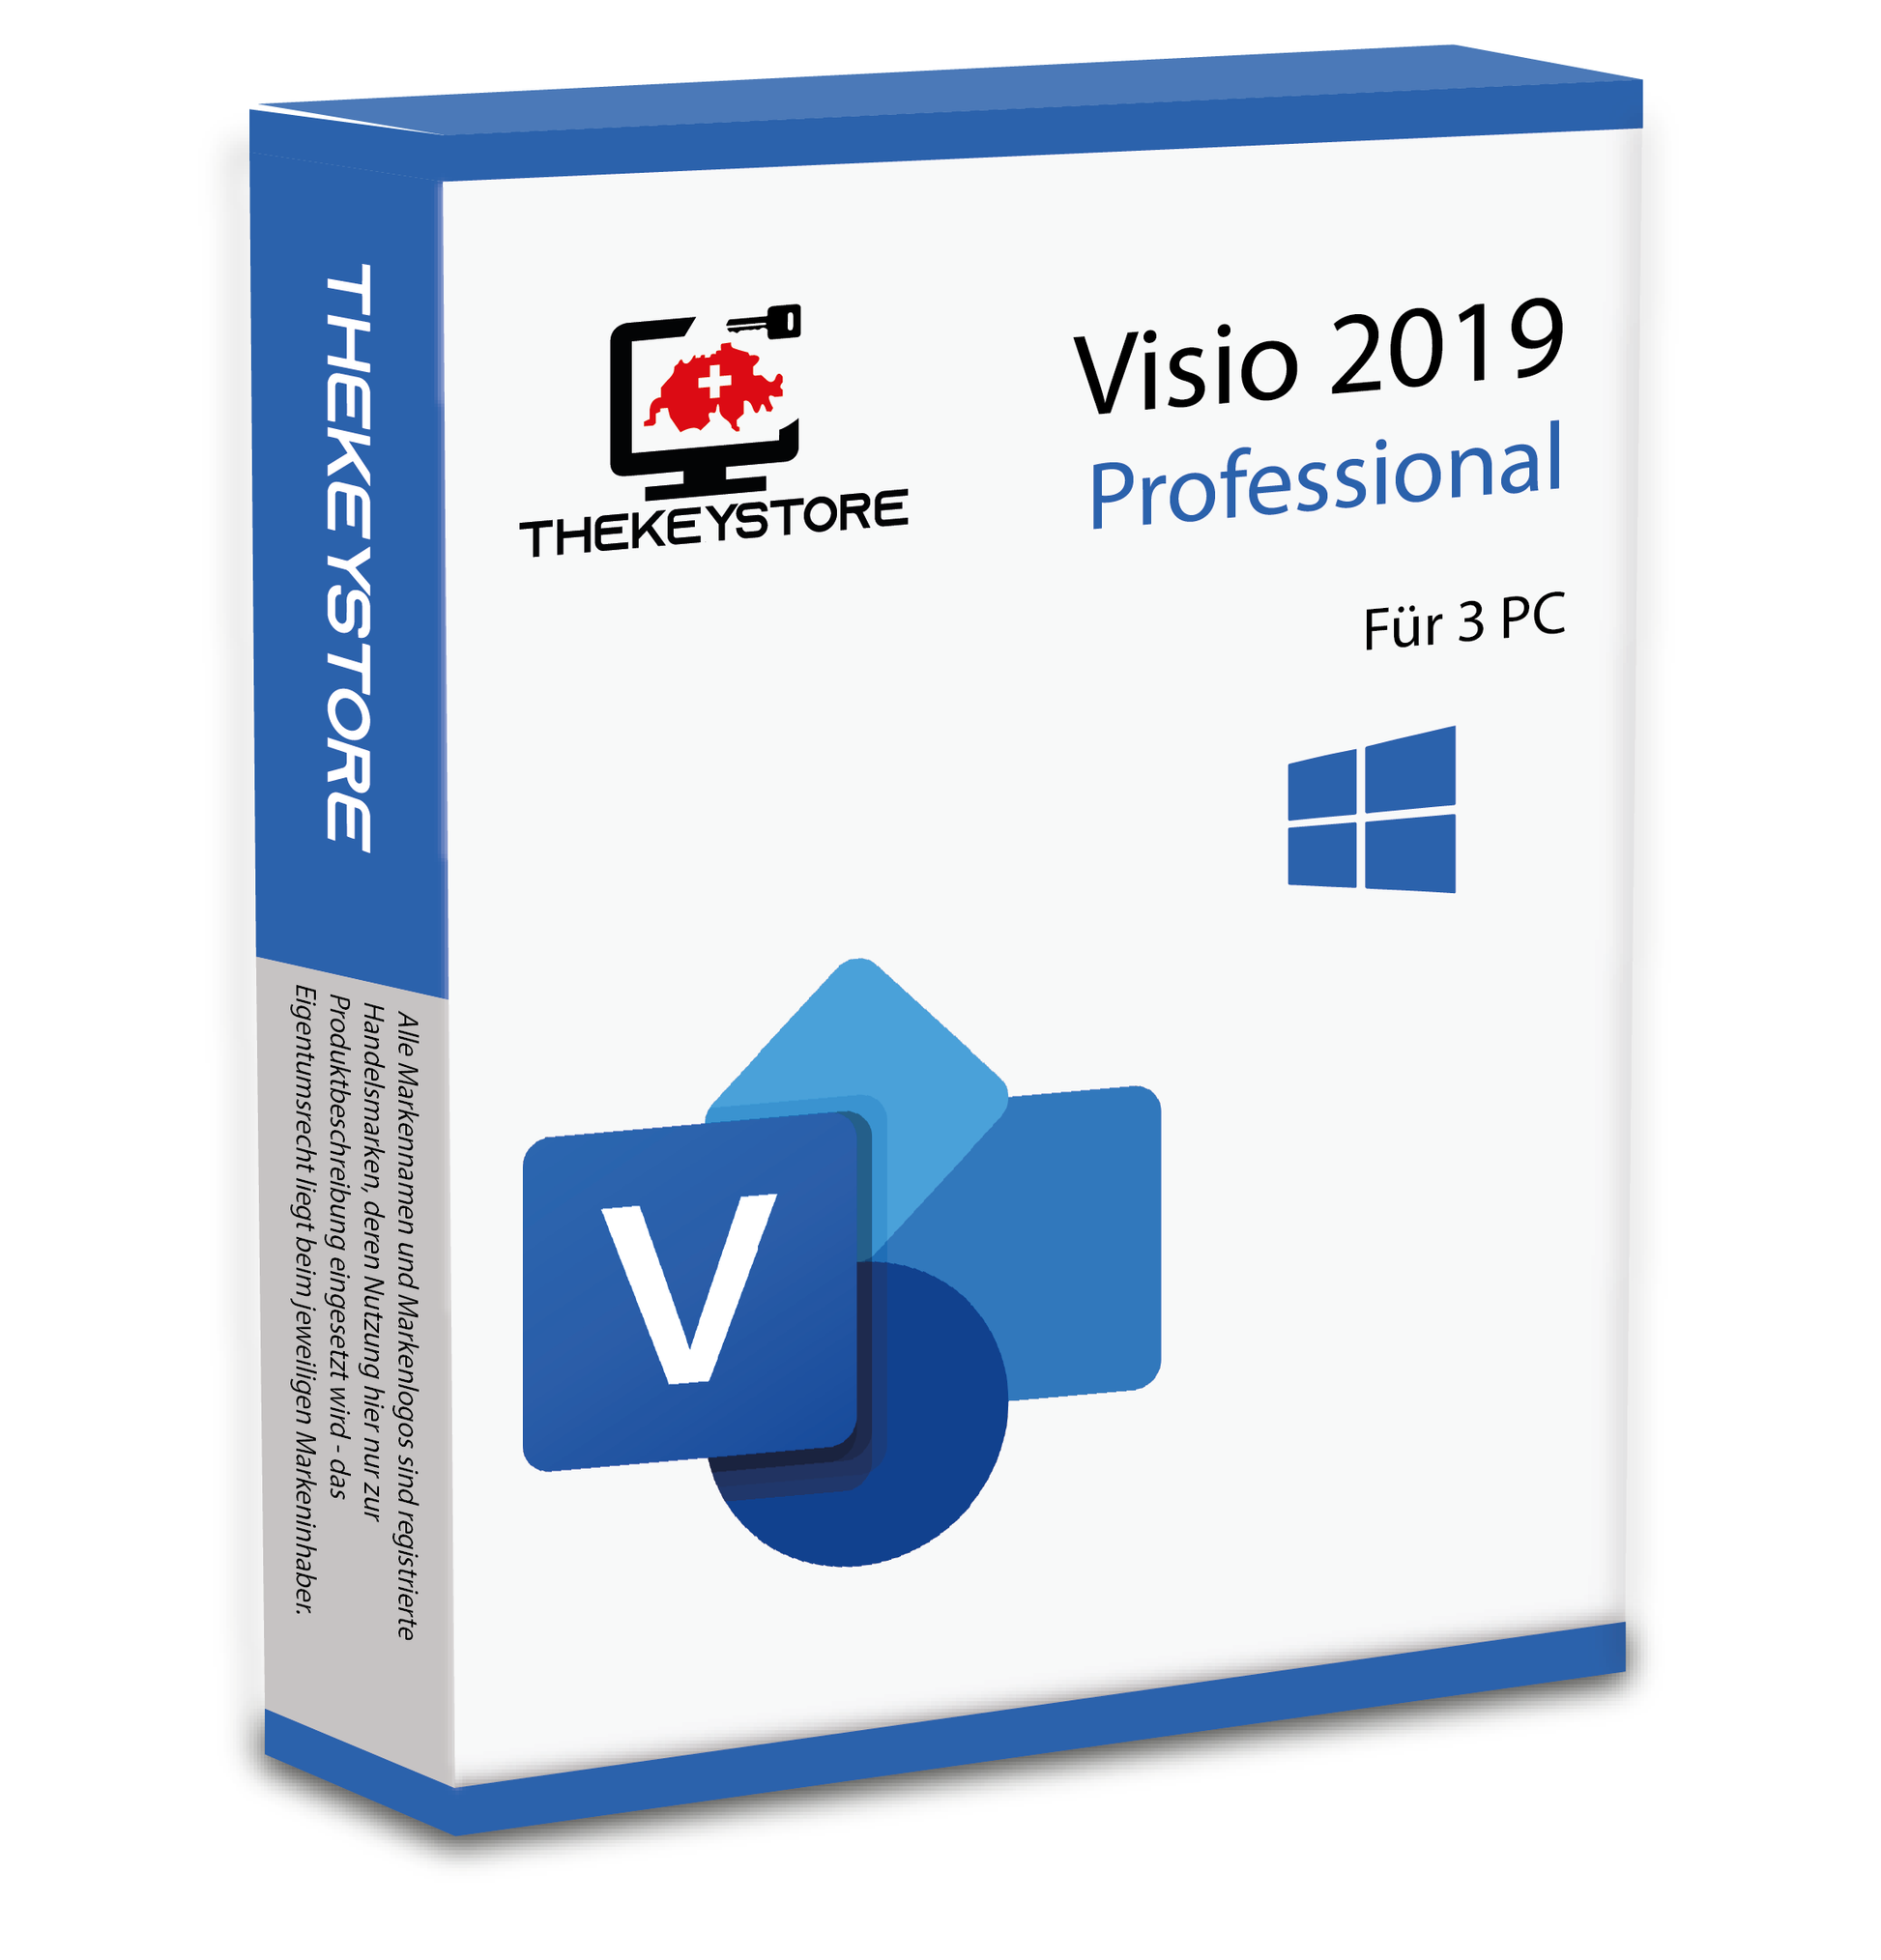 Microsoft Visio 2019 Professional - Für 3 PC - TheKeyStore Schweiz